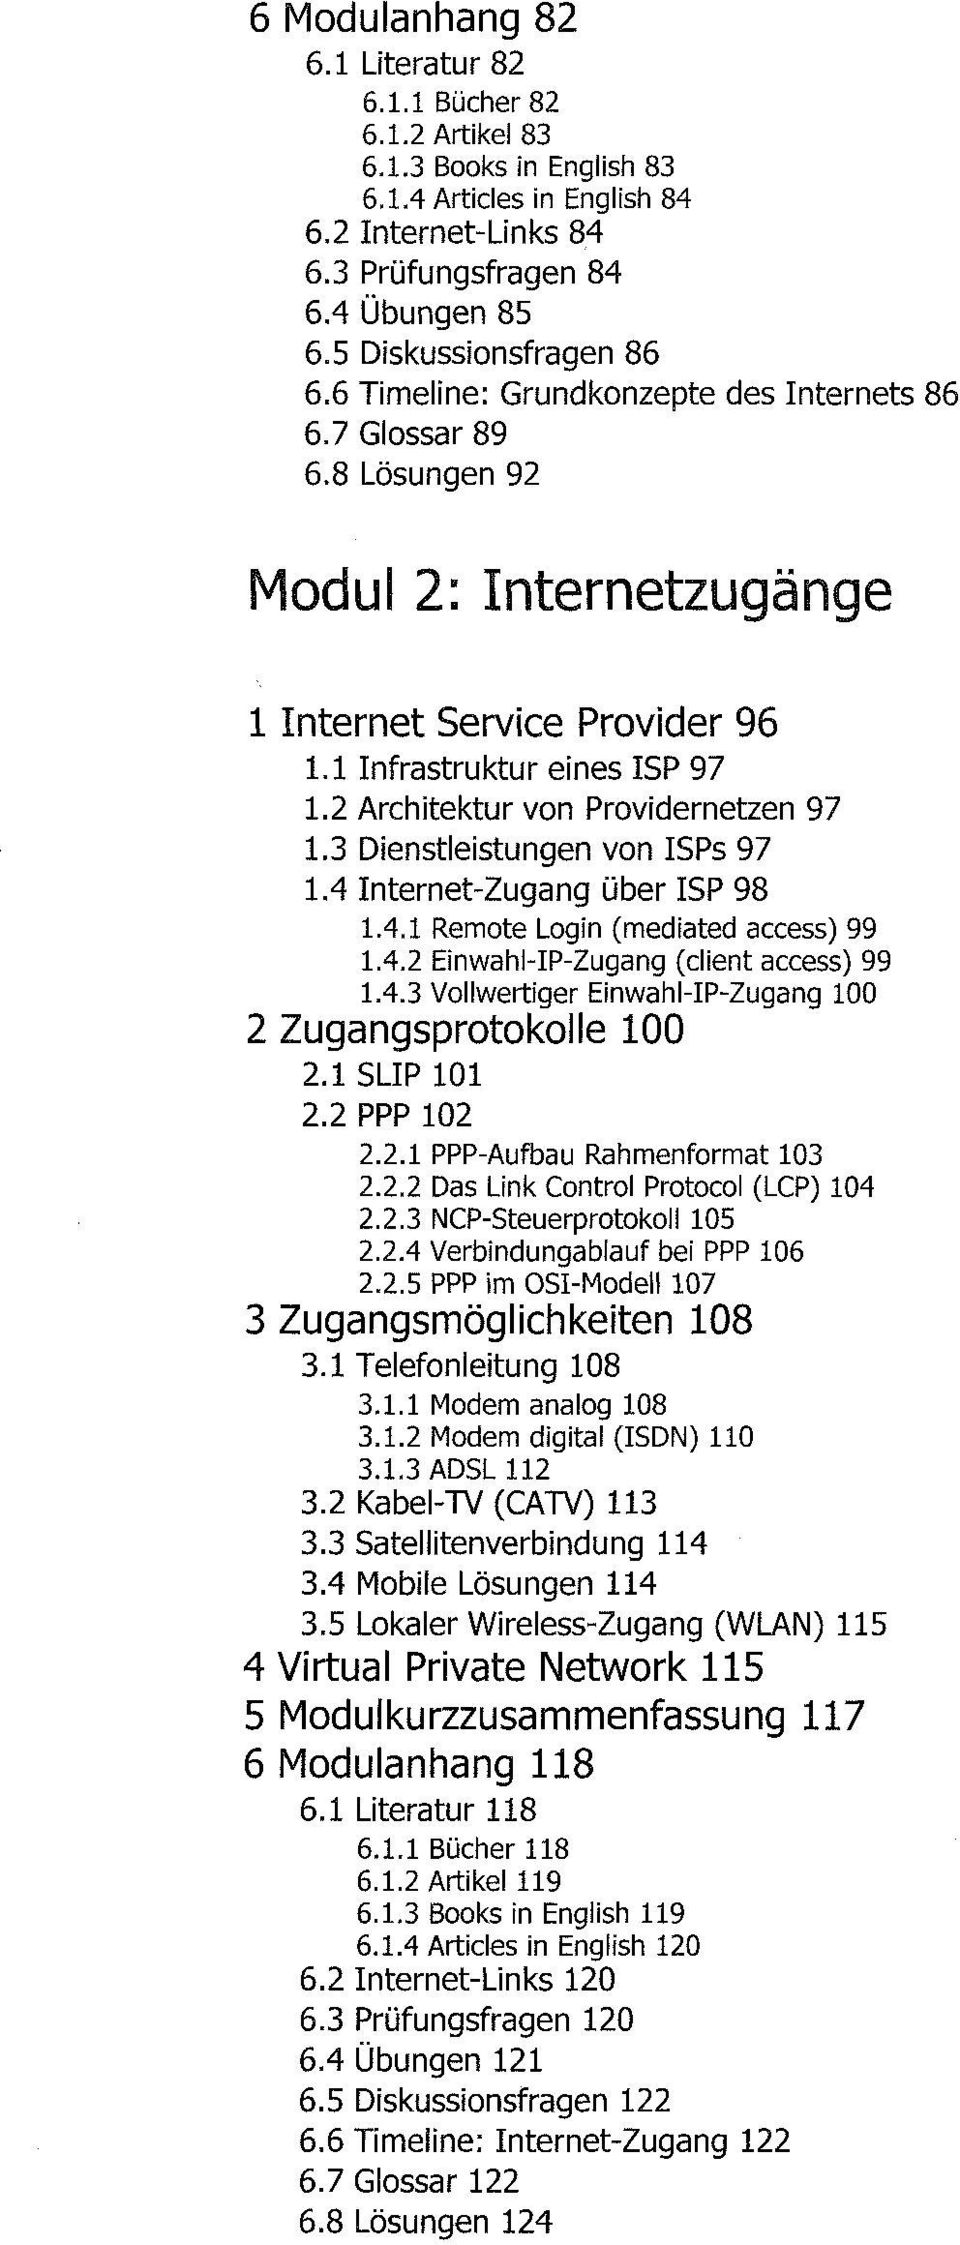 2 Architektur von Providernetzen 97 1.3 Dienstleistungen von ISPs 97 1.4 Internet-Zugang über ISP 98 1.4.1 Remote Login (mediated access) 99 1.4.2 Einwahl-IP-Zugang (dient access) 99 1.4.3 Vollwertiger Einwahl-IP-Zugang 100 2 Zugangsprotokolle 100 2.